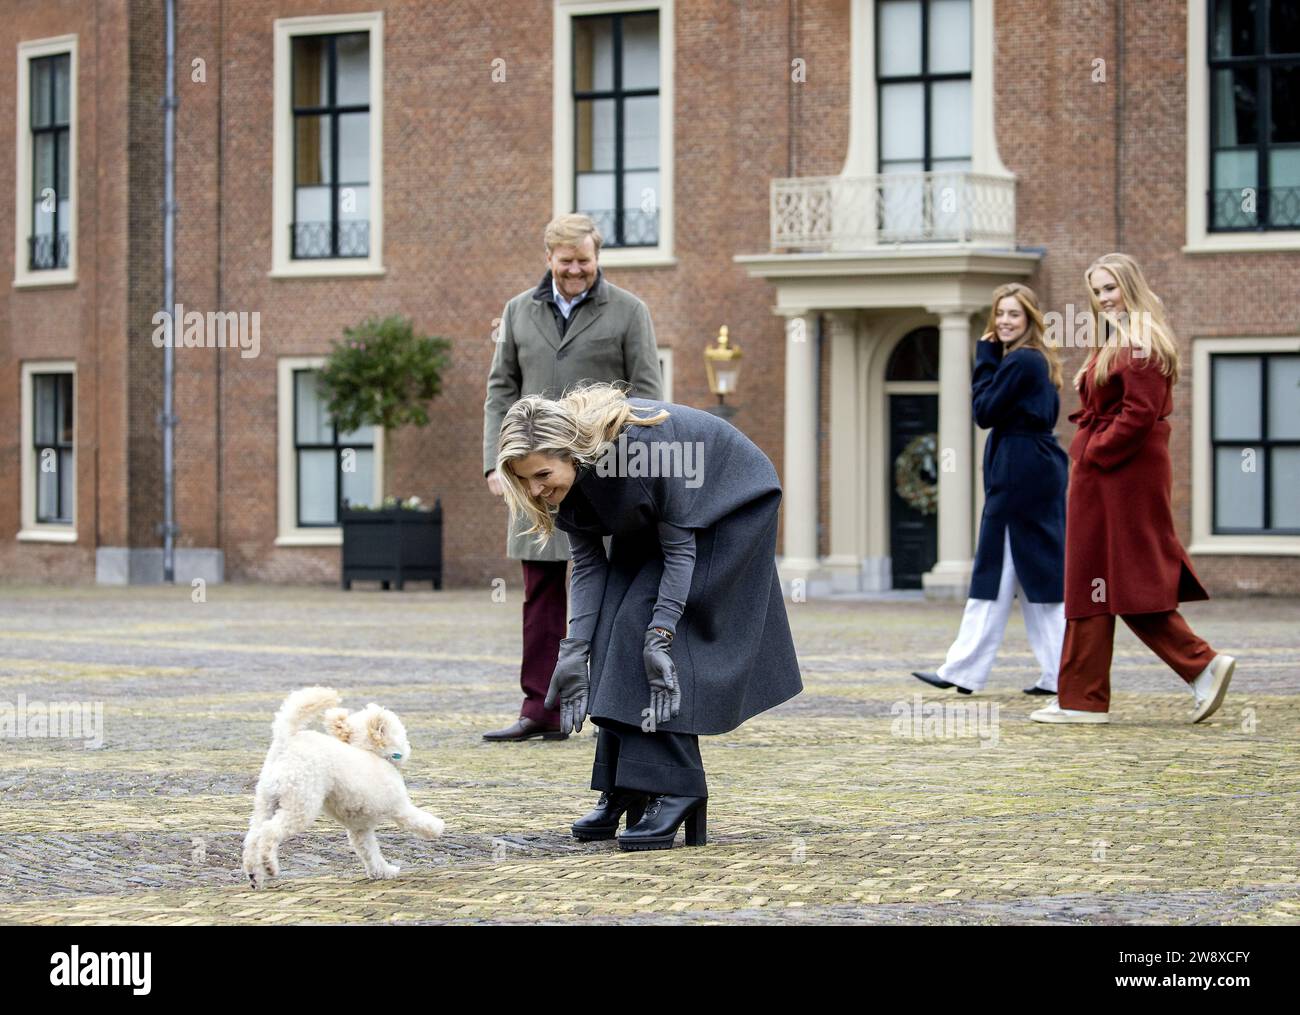 DEN HAAG - König Willem-Alexander, Königin Maxima, Prinzessin Alexia und Prinzessin Amalia während der traditionellen Fotosession der königlichen Familie im Huis Ten Bosch Palast. ANP KOEN VAN WEEL niederlande aus - belgien aus Stockfoto